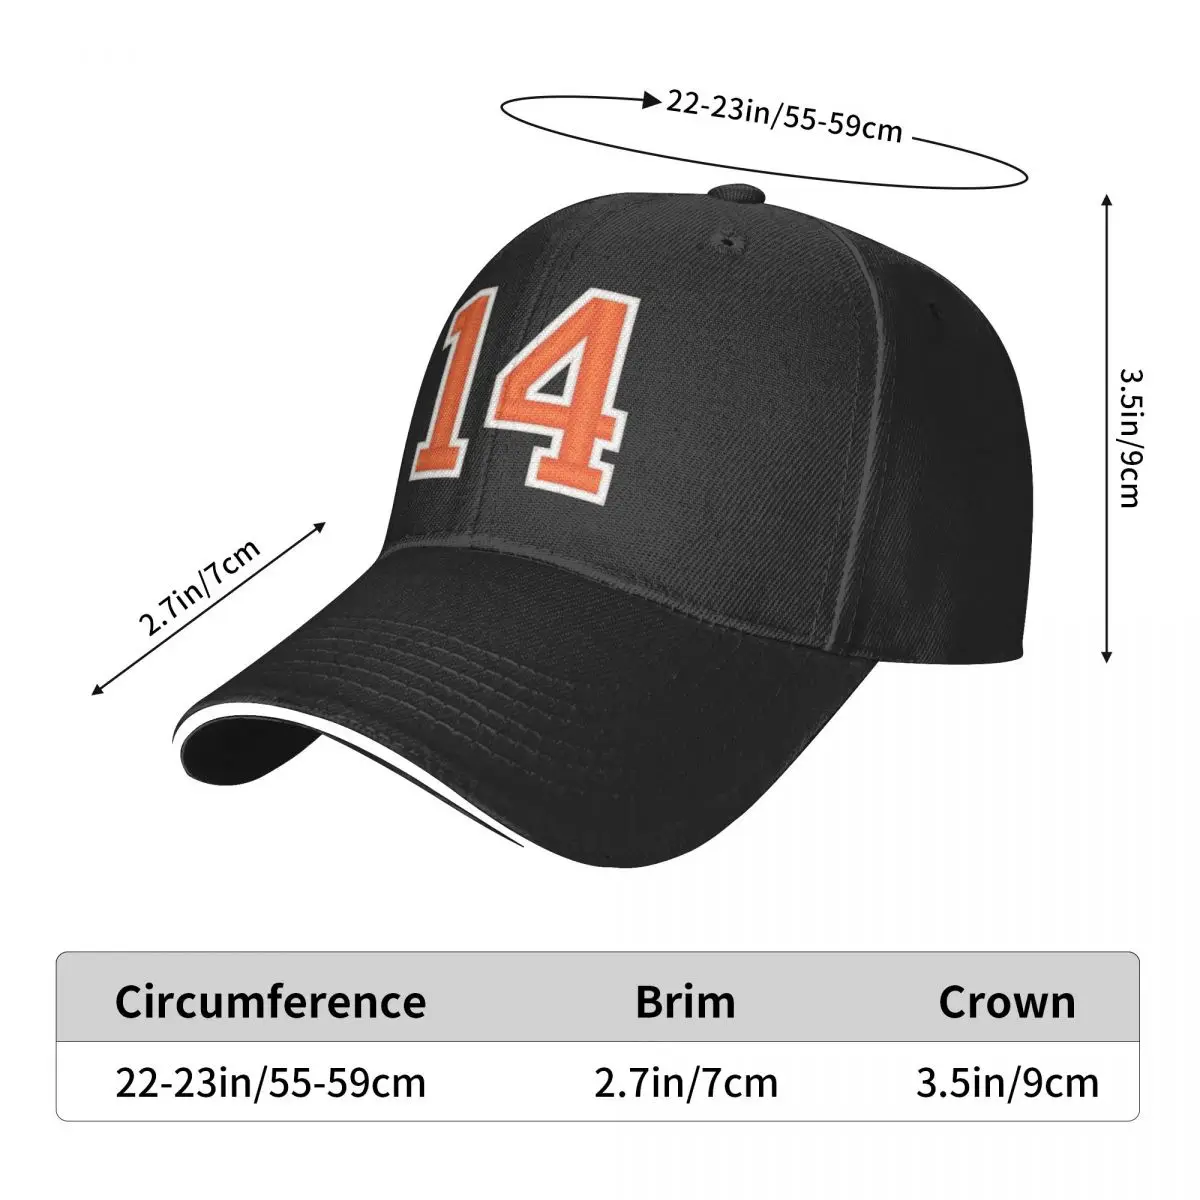 Gorra de béisbol para hombre y mujer, gorro deportivo con número 14, color naranja, ropa de Golf